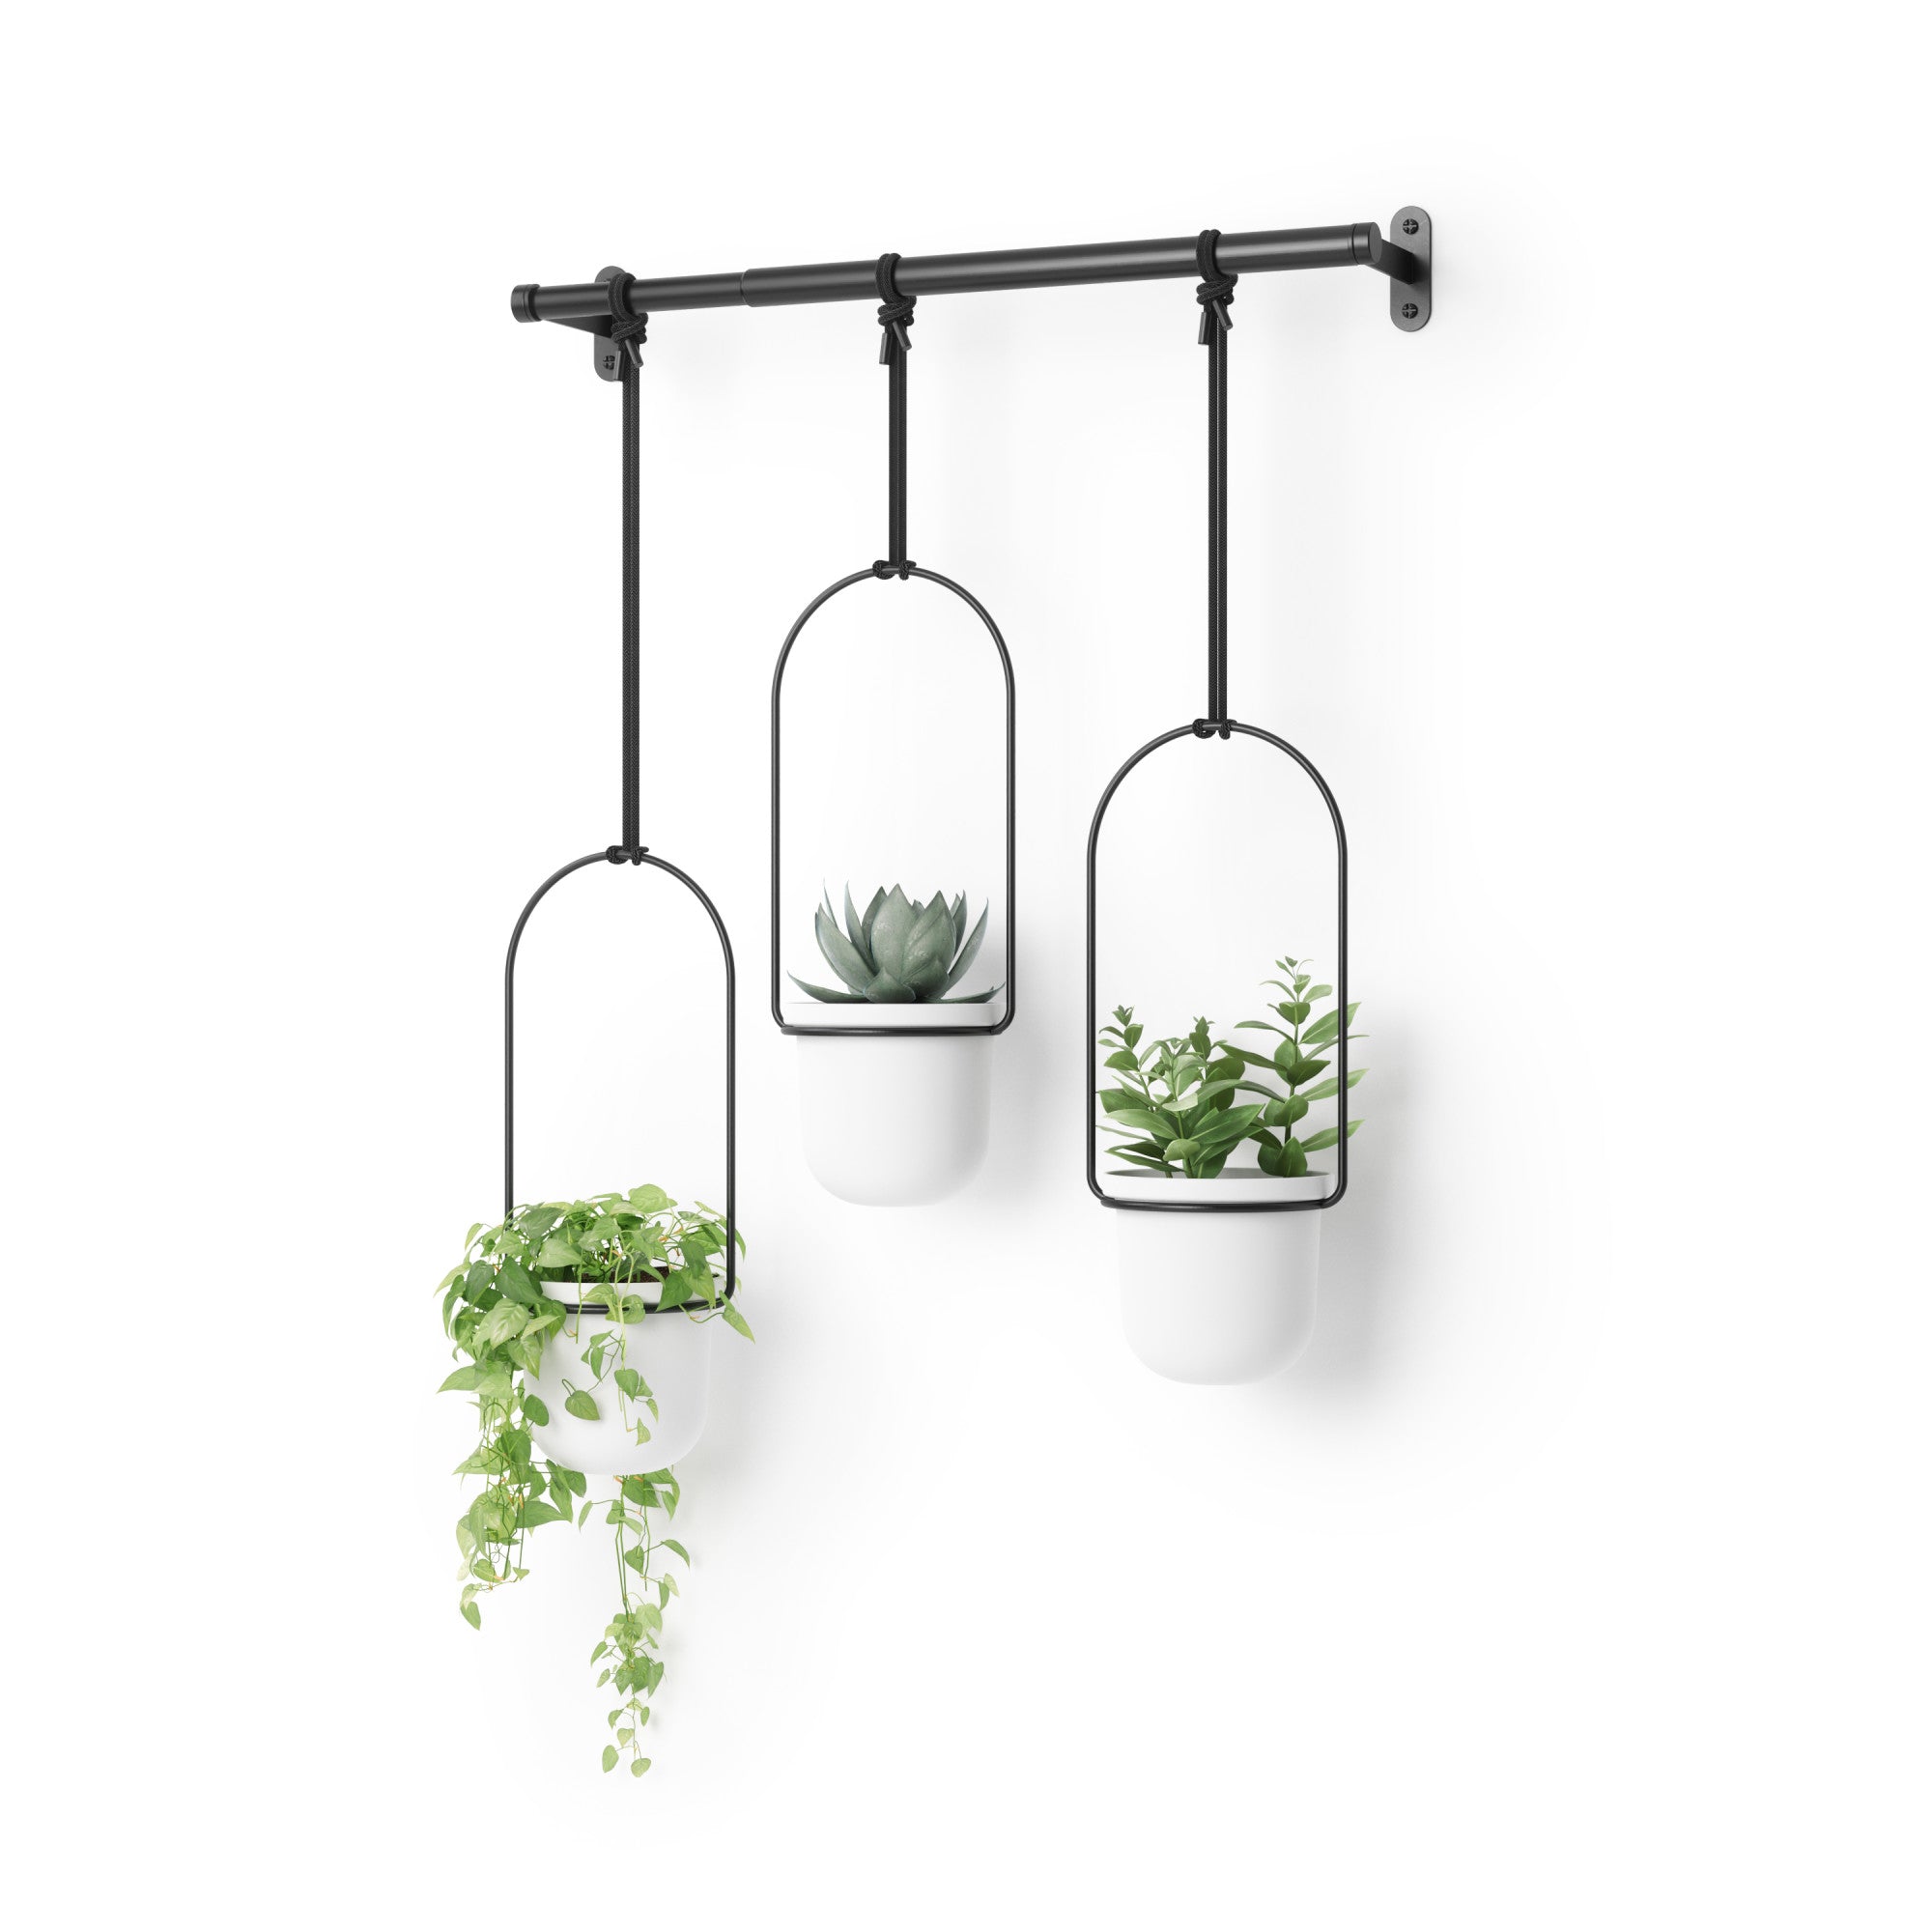 Hanging Planter – Umbra